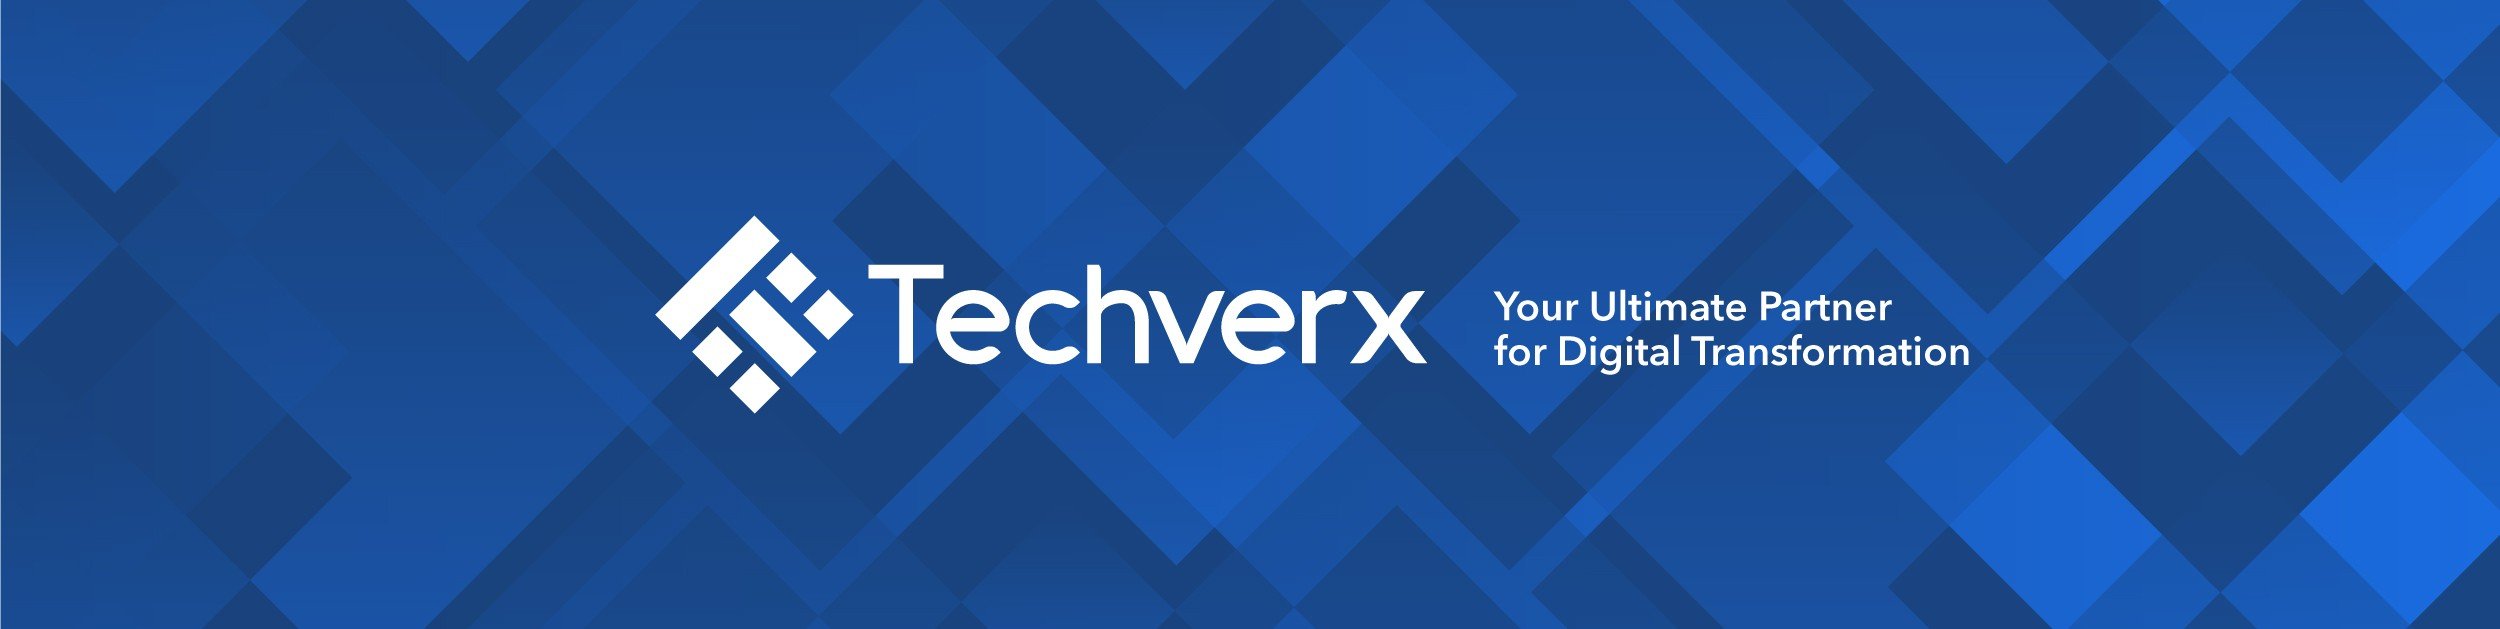 Techverx cover